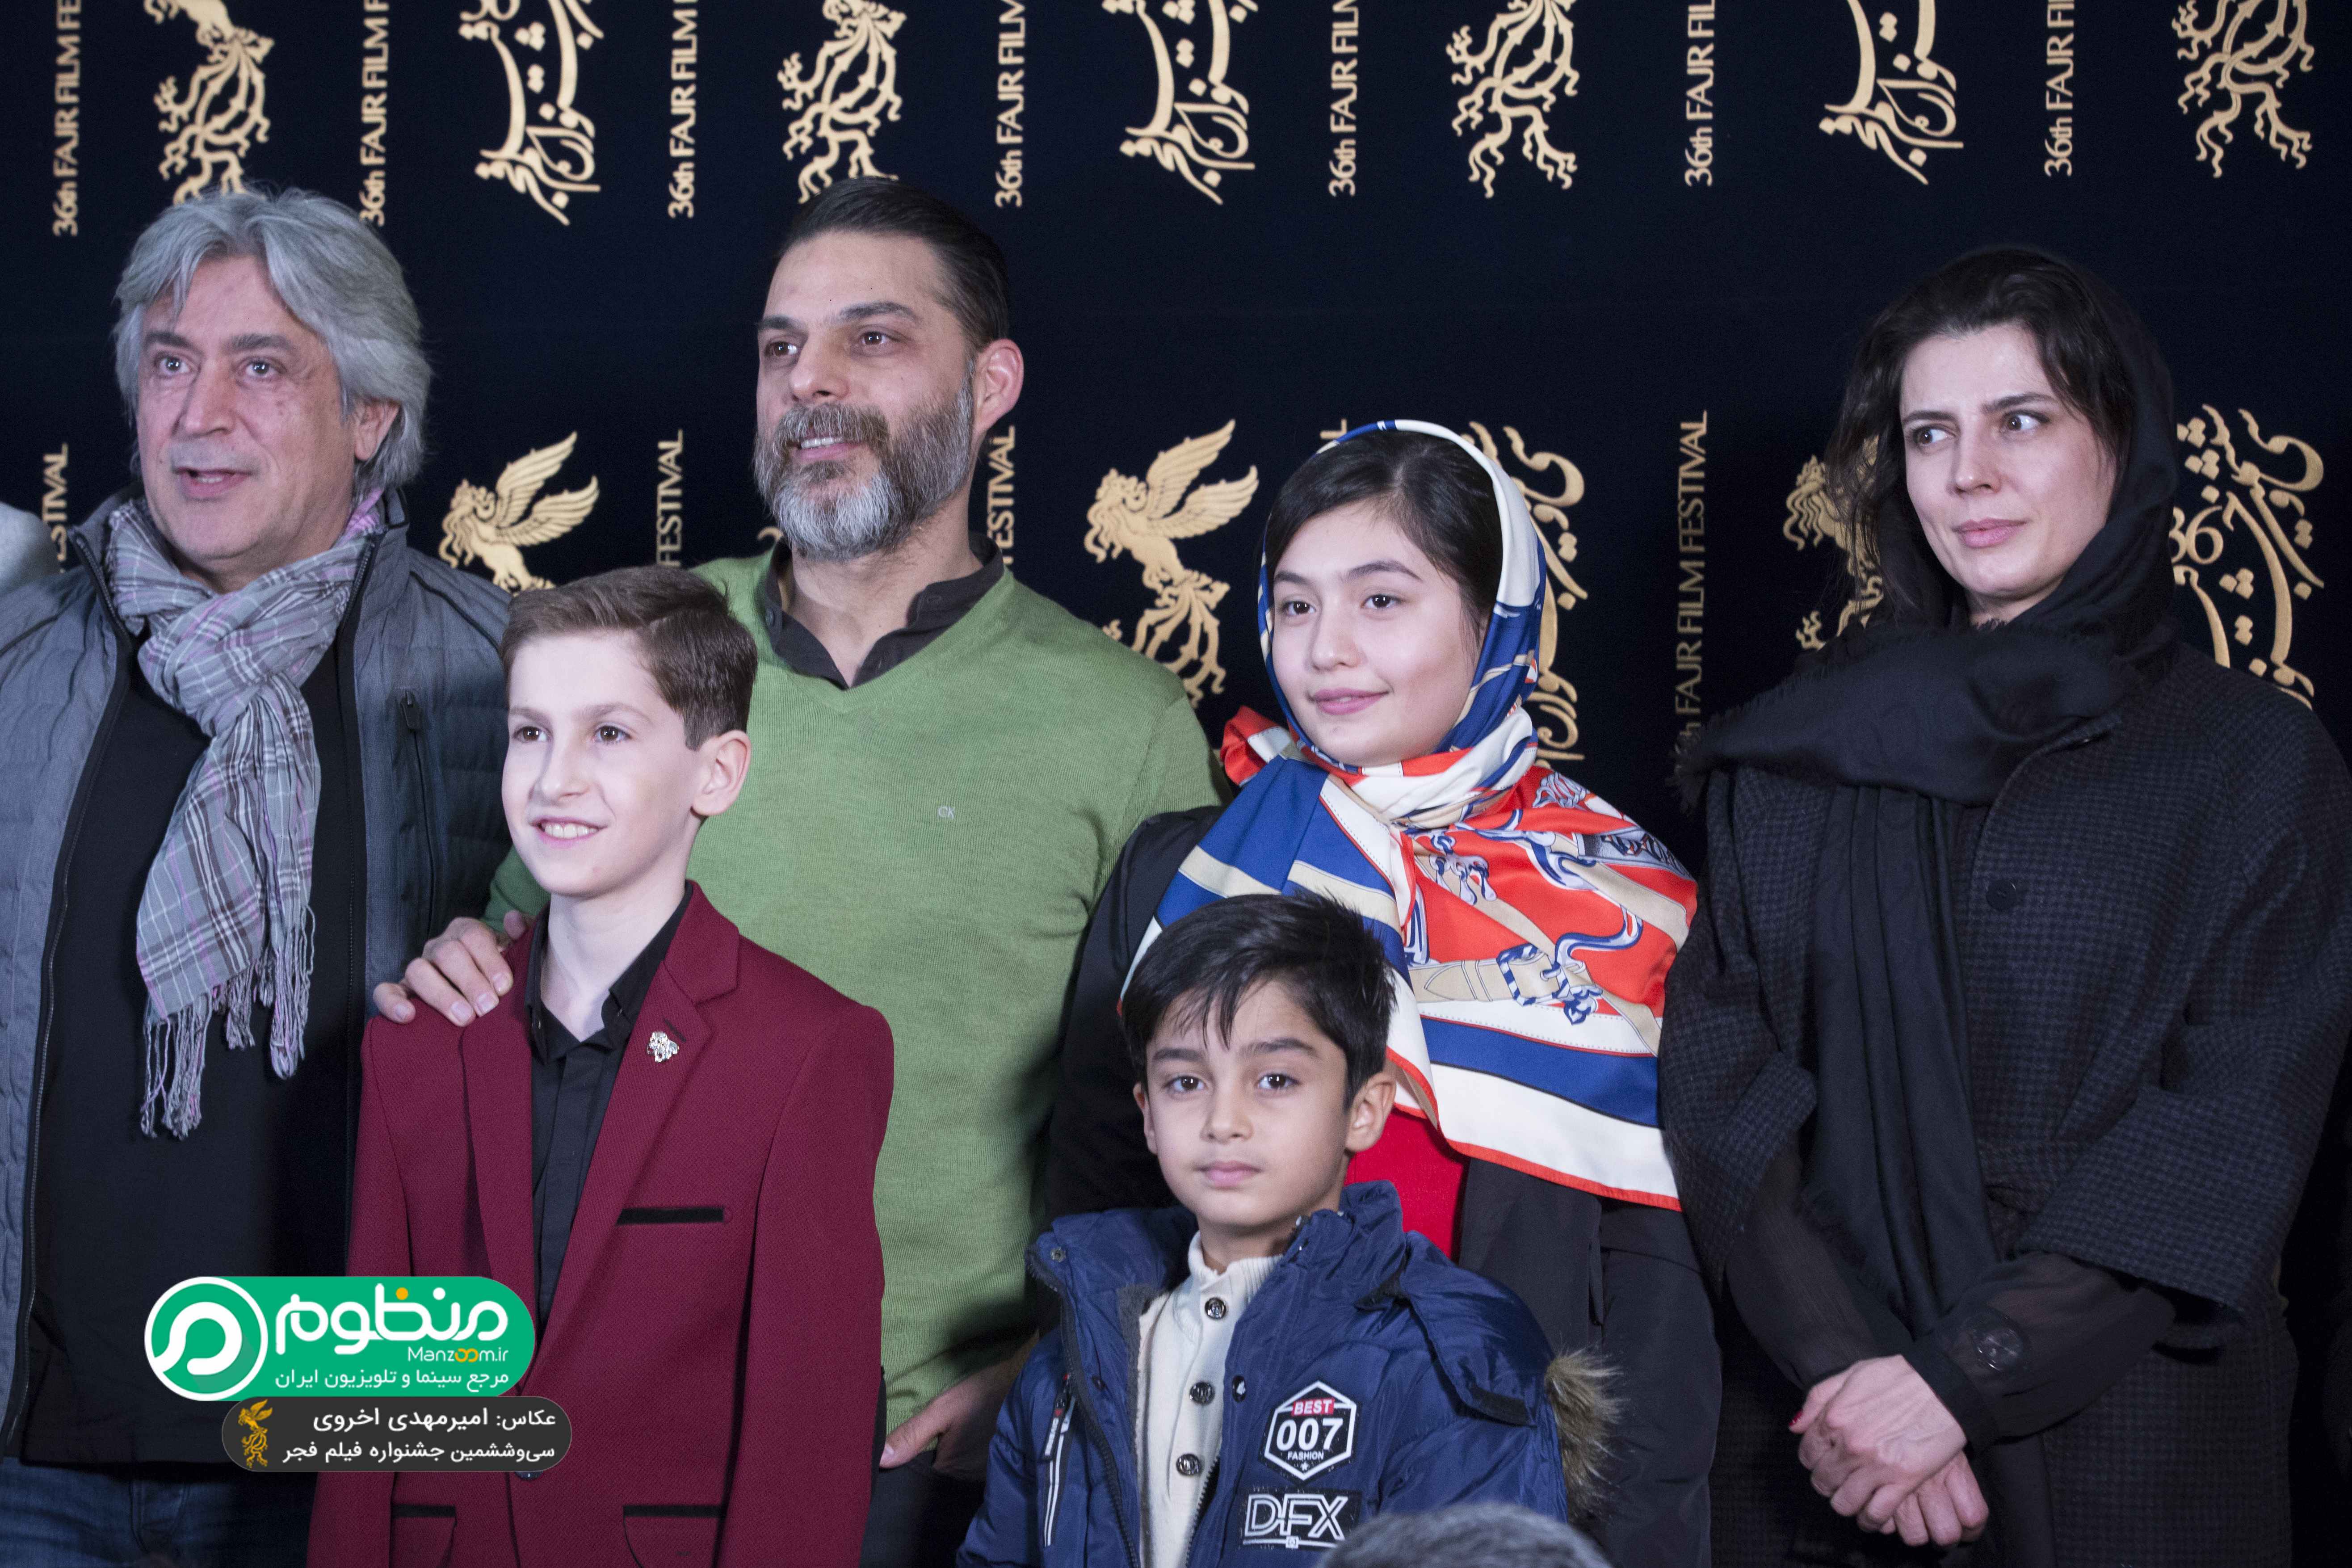 پیمان معادی در جشنواره فیلم سینمایی بمب؛ یک عاشقانه به همراه ارشیا عبداللهی، ایرج شهزادی، لیلا حاتمی و باران معادی